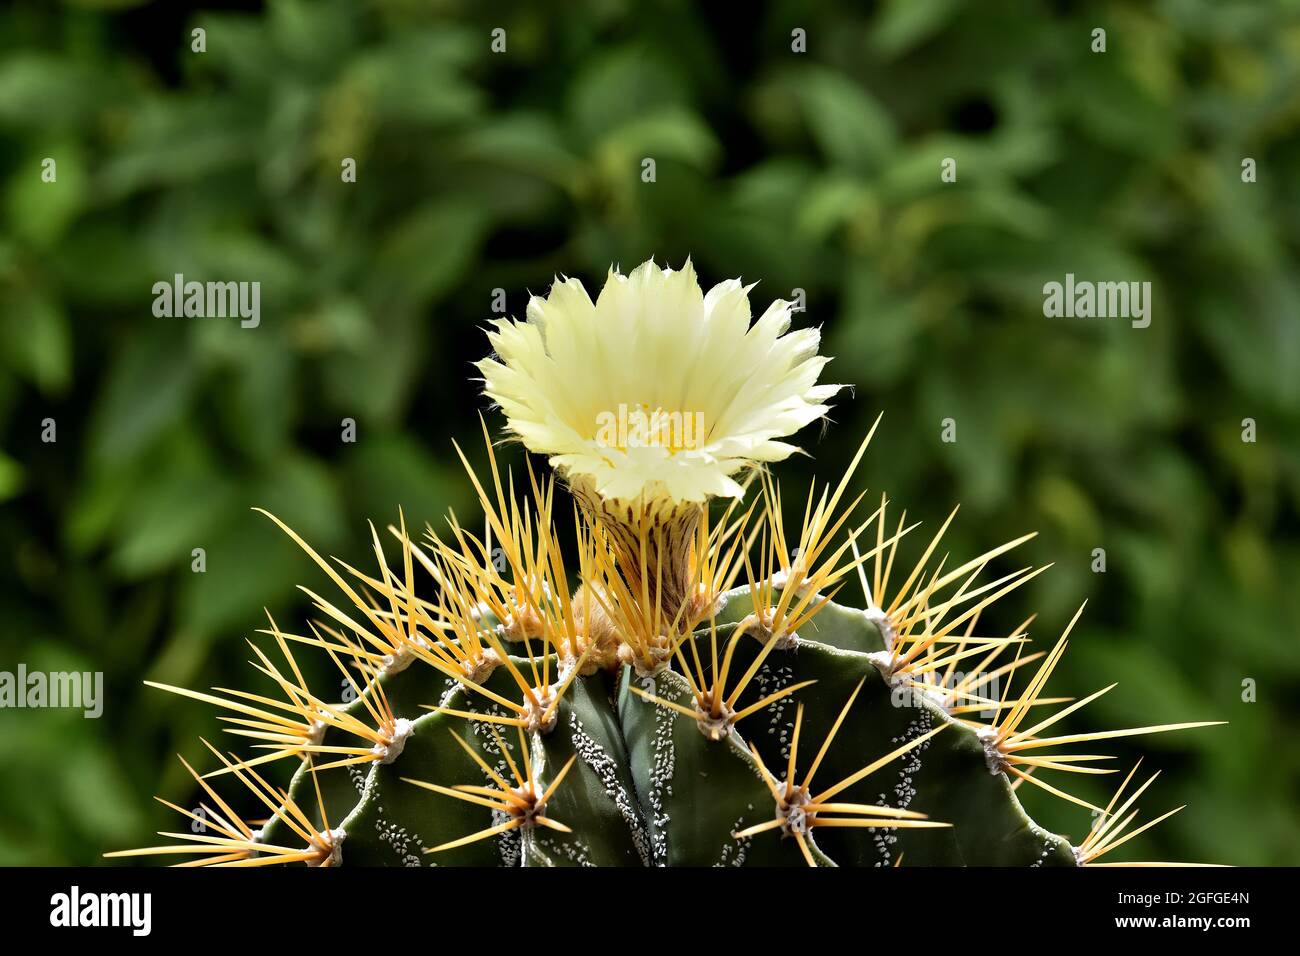 Bel fiore giallo con delicati petali e stamens di un cactus